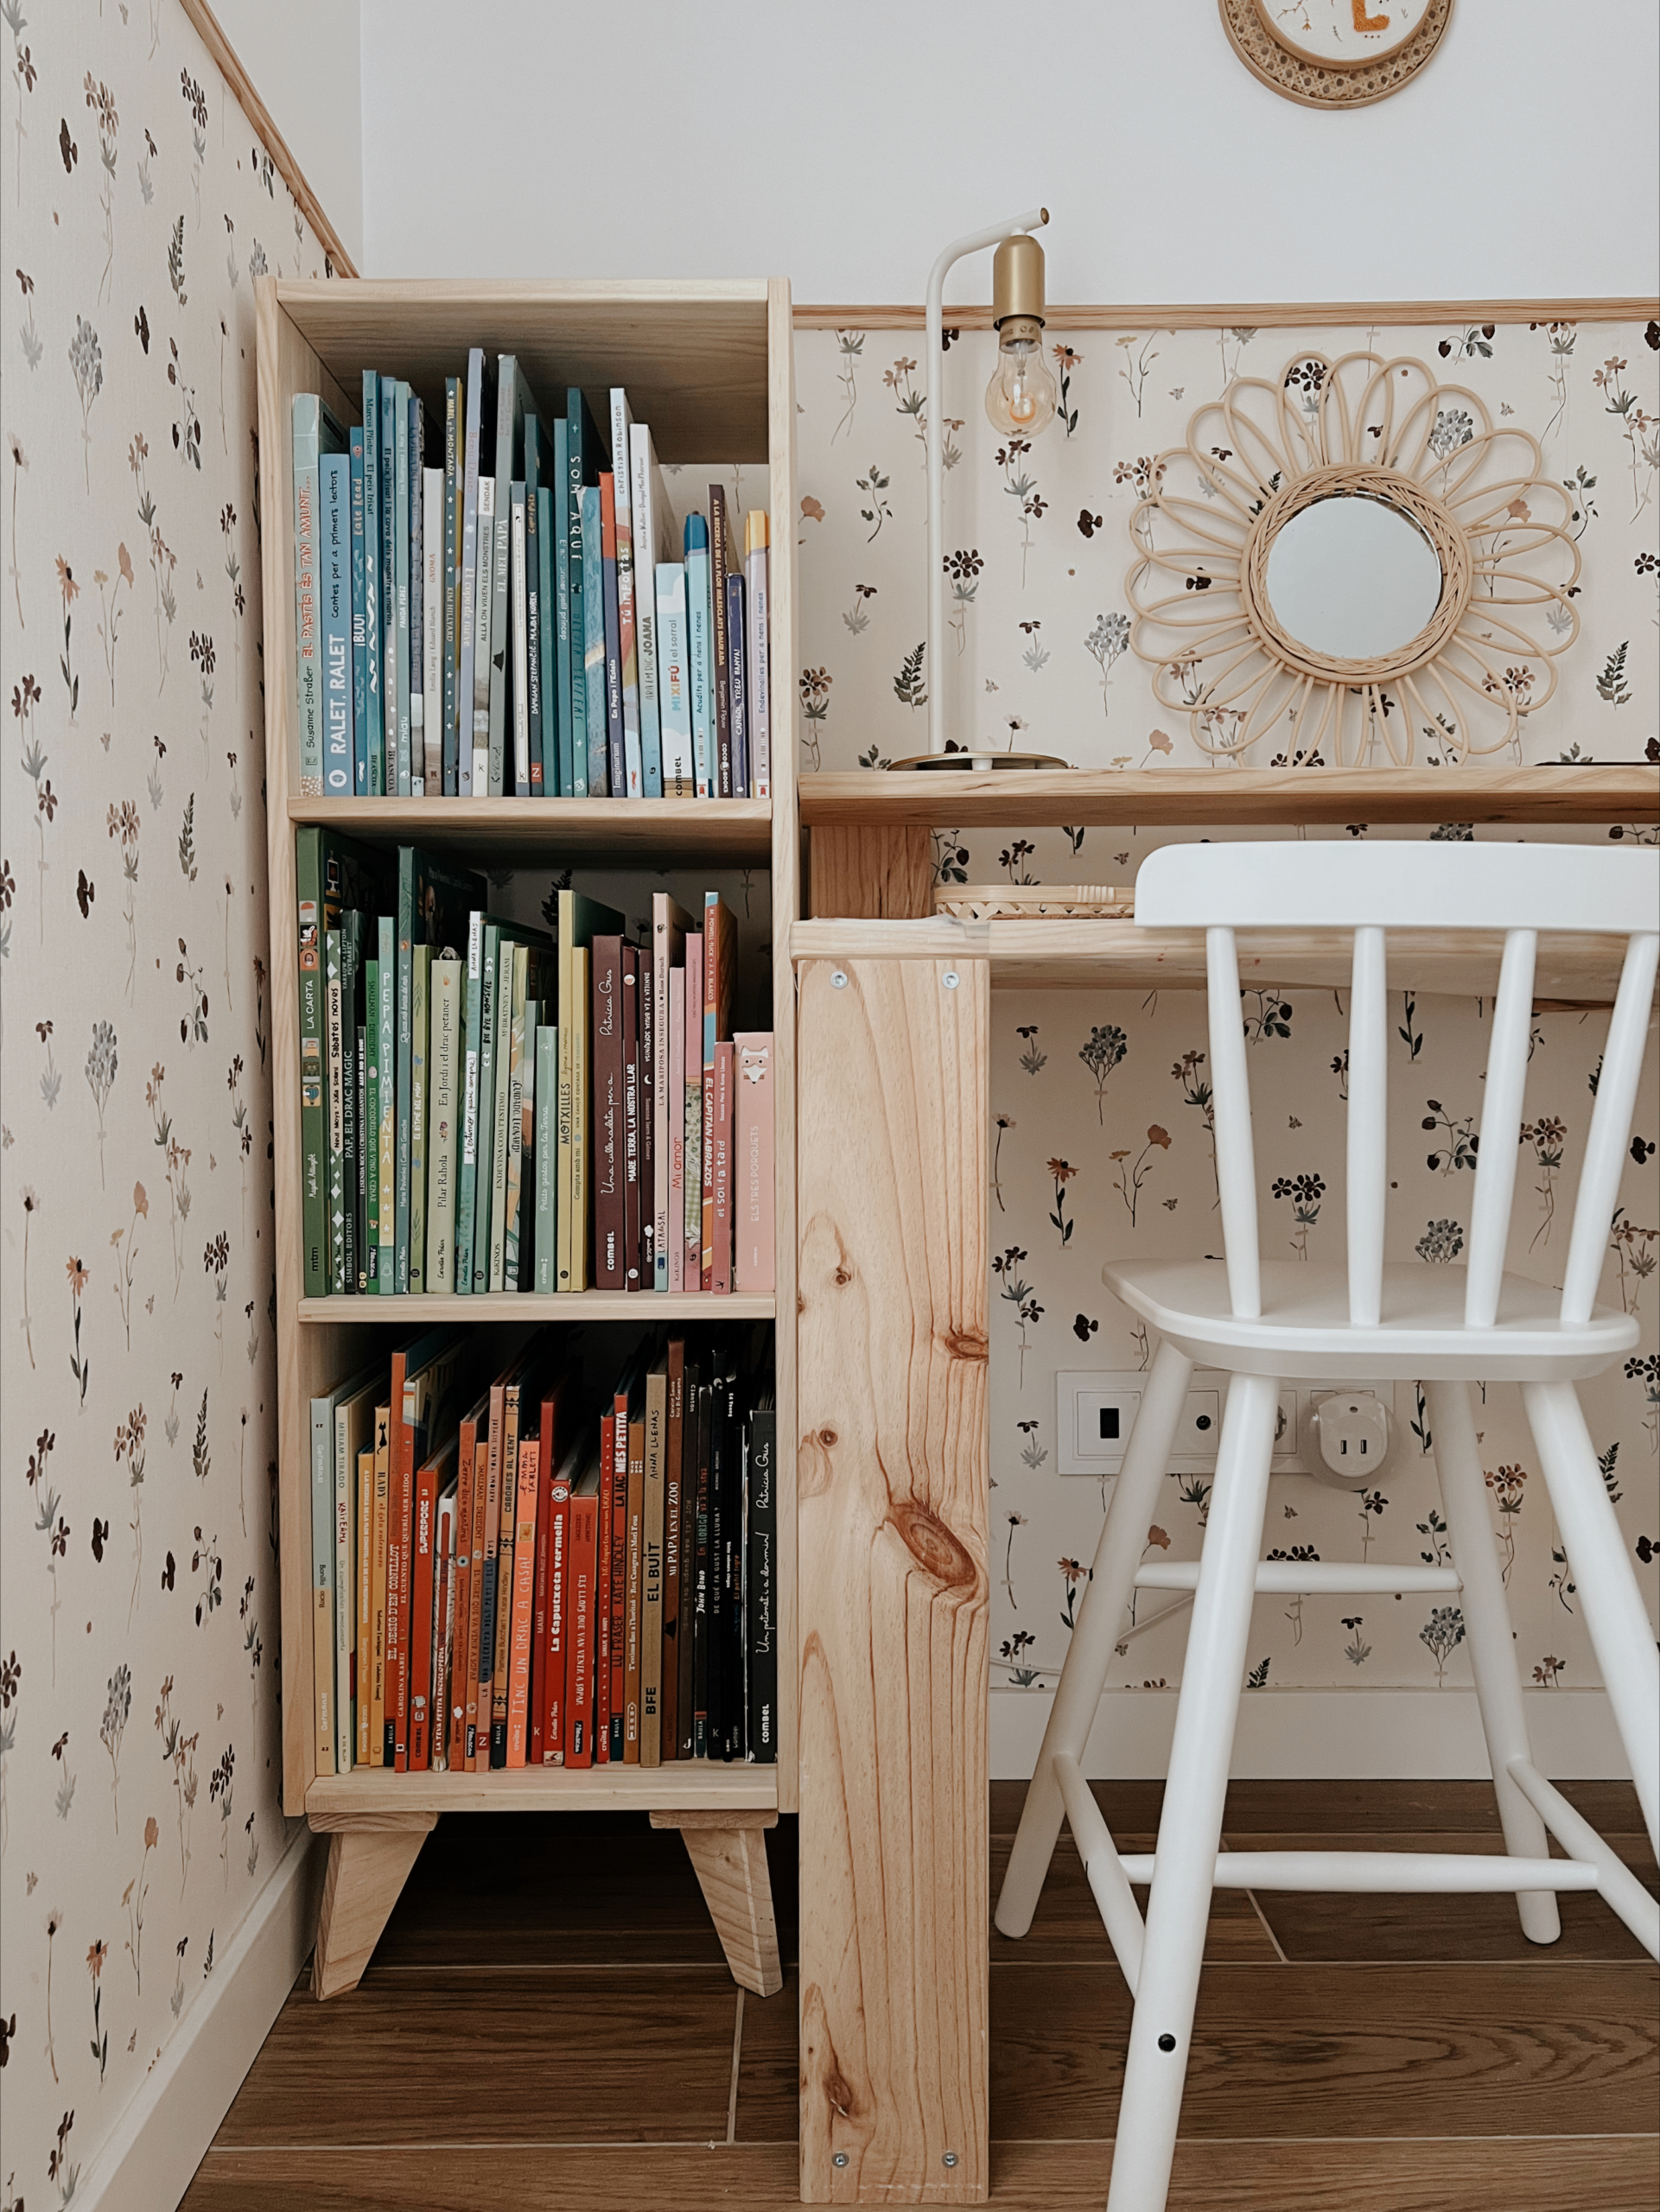 Estanterías Montessori - ideales para organizar libros y juguetes